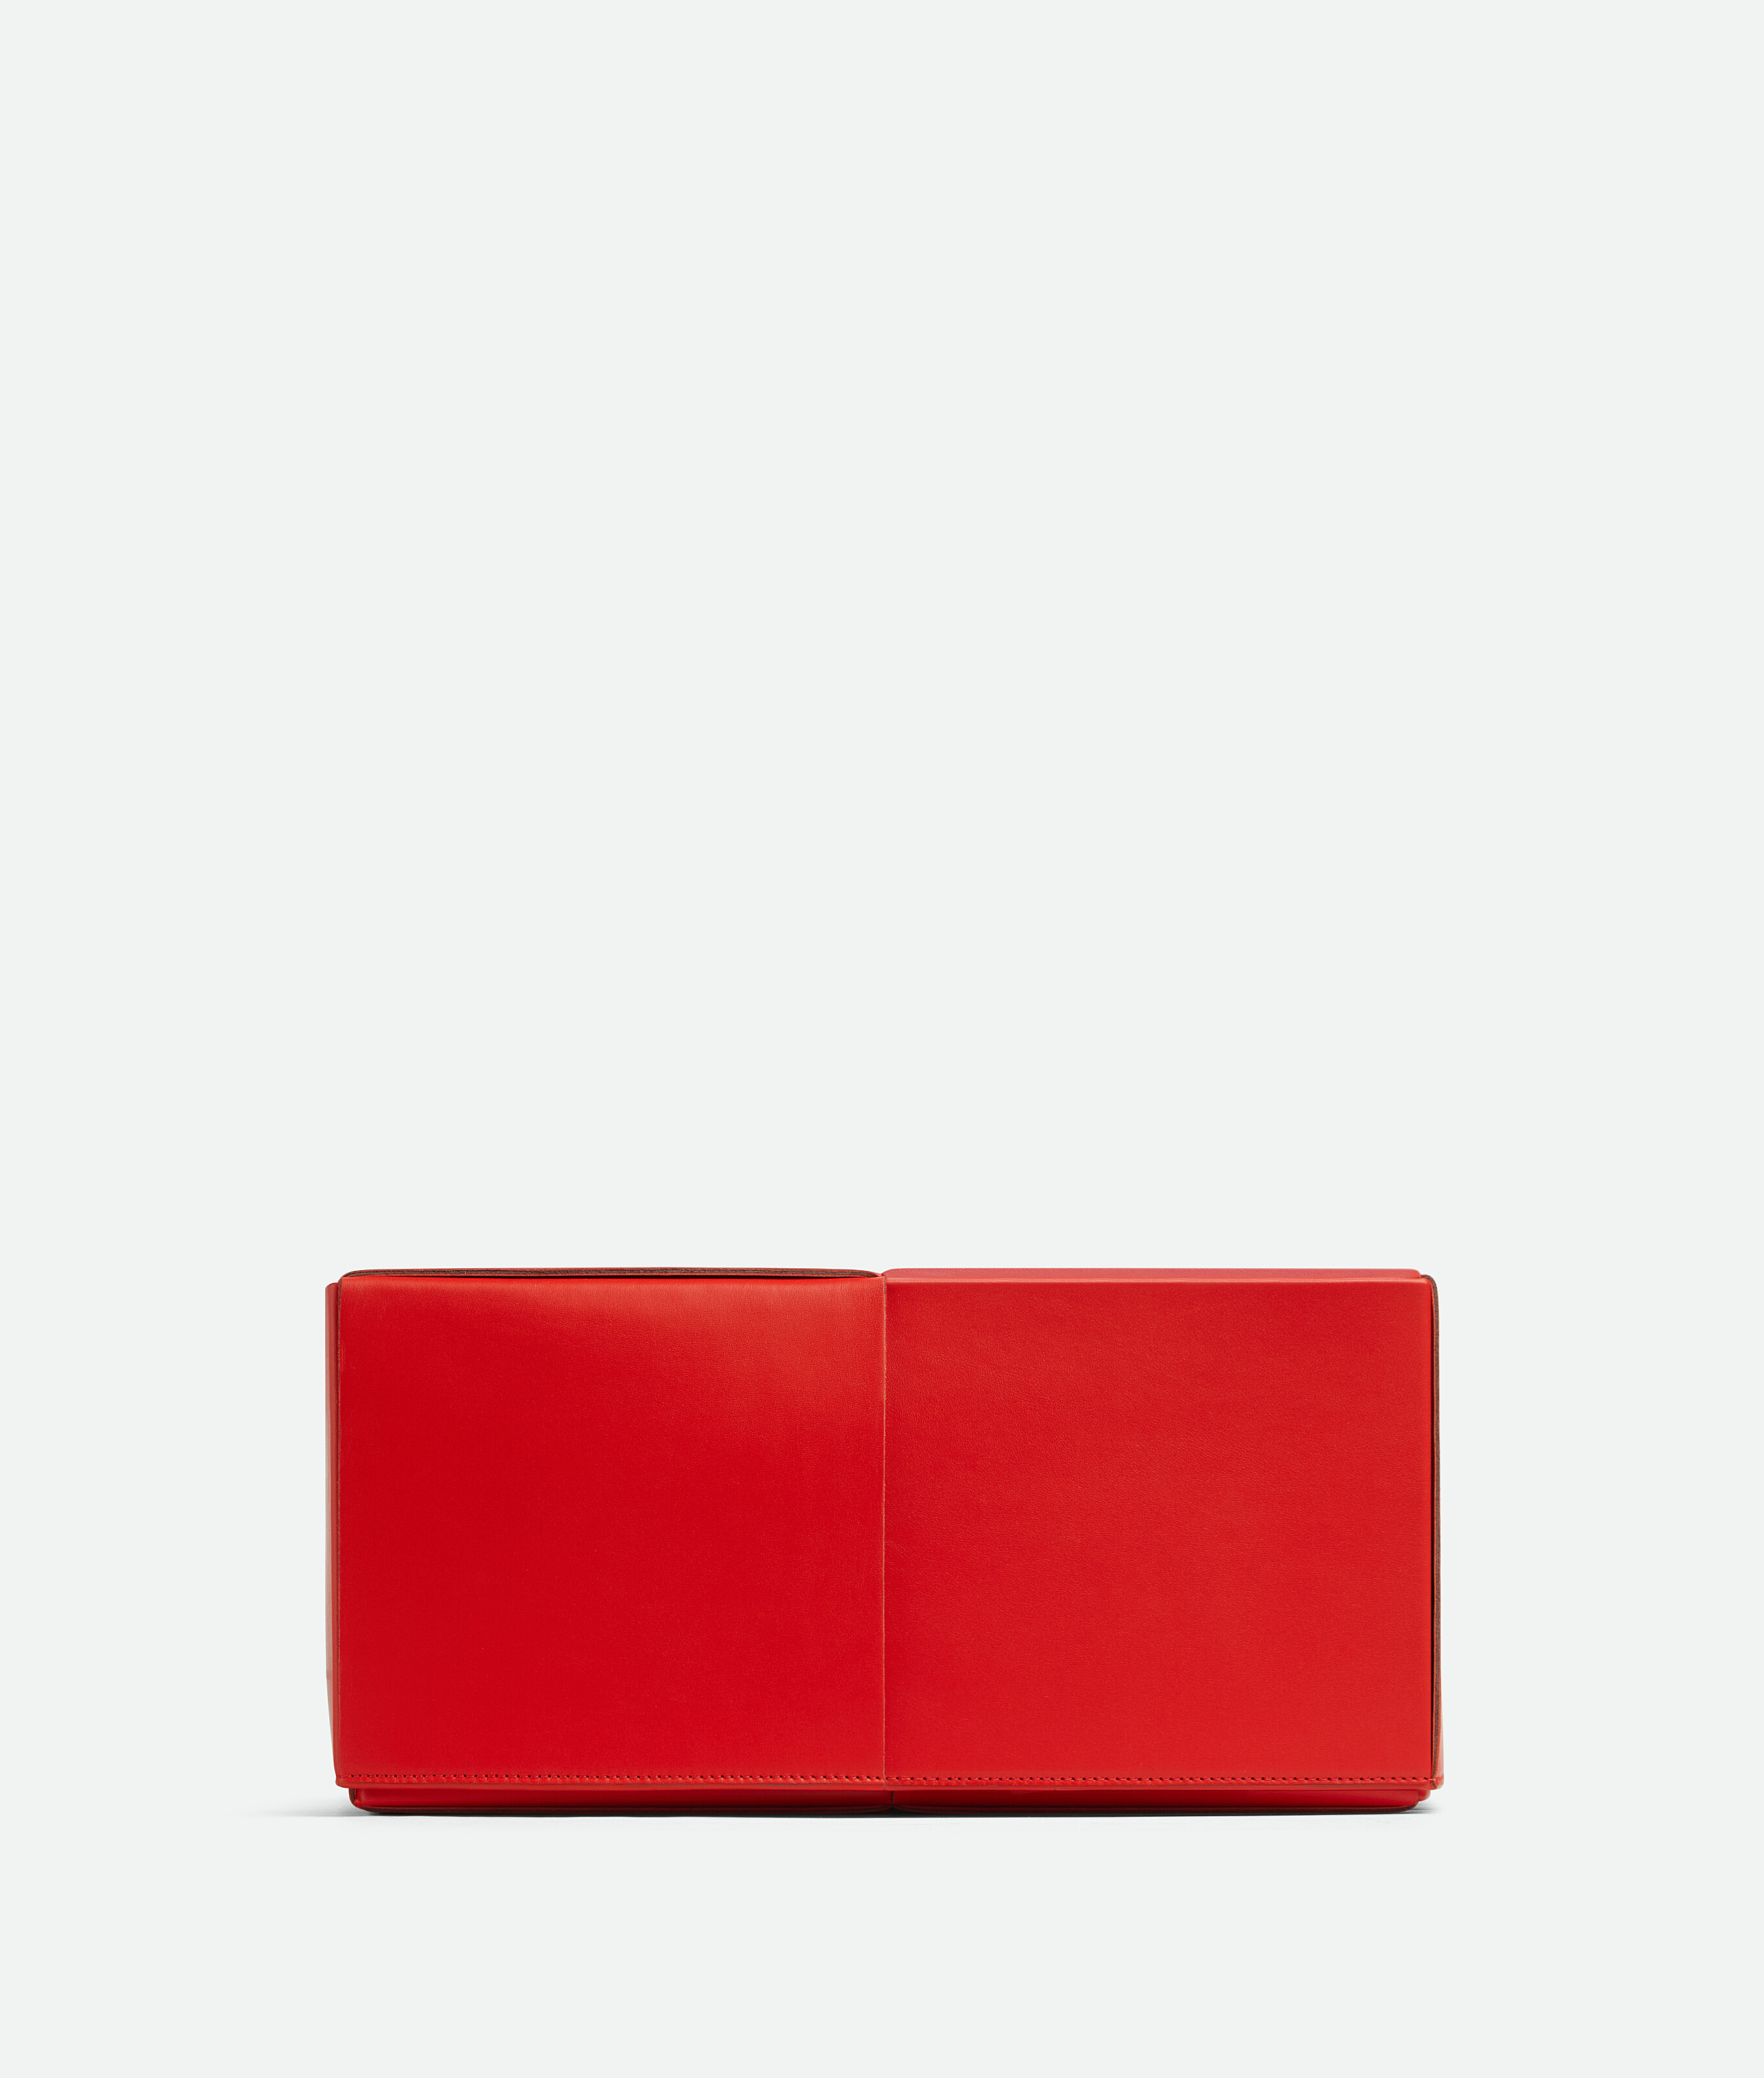 Bottega Veneta Cassette Box In Red